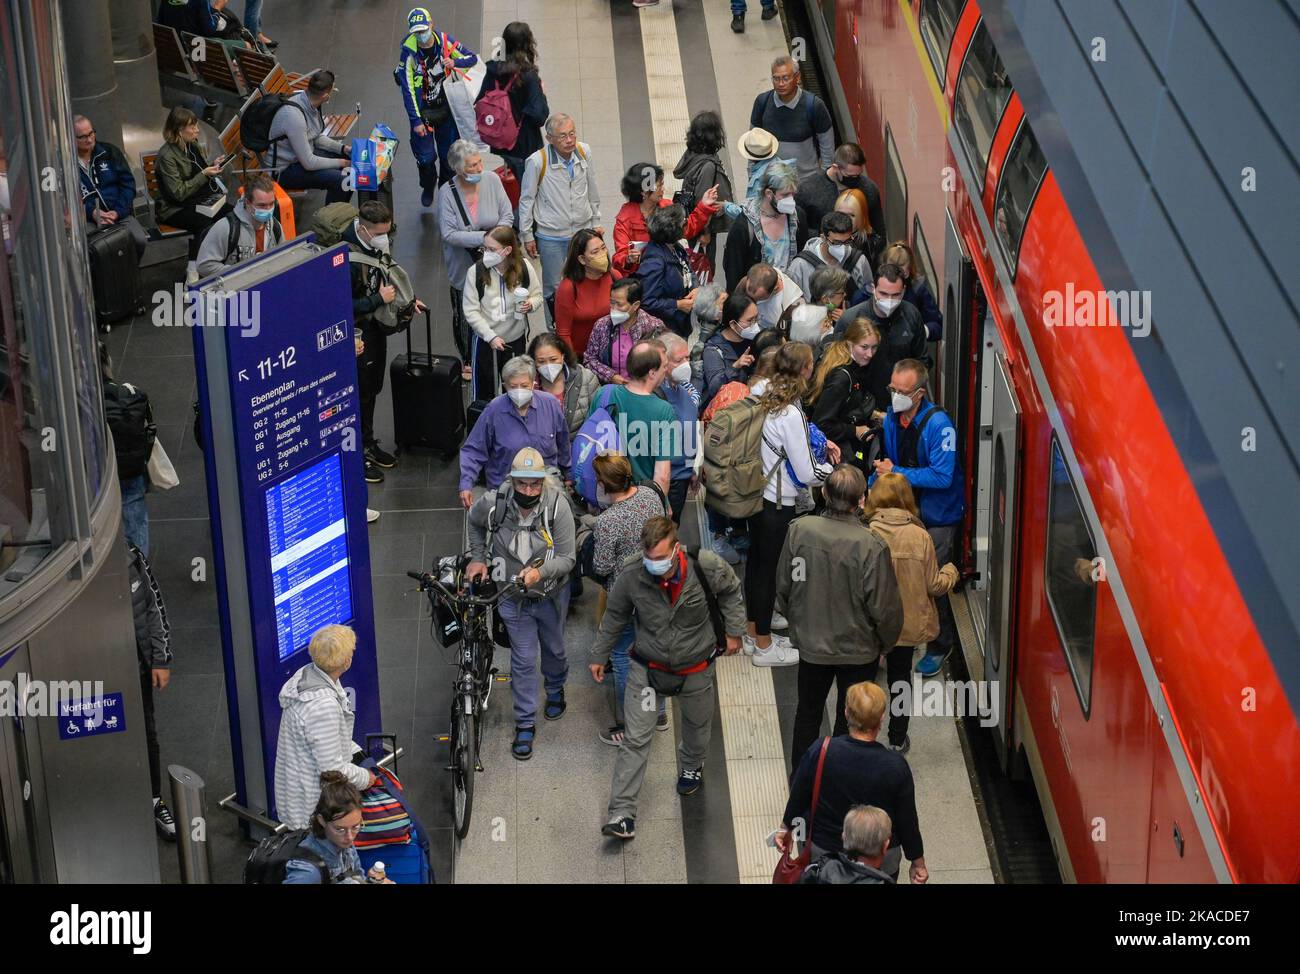 Passagiere, Bahnsteig, Regionalexpress, Hauptbahnhof, Berlin, Deutschland Stock Photo